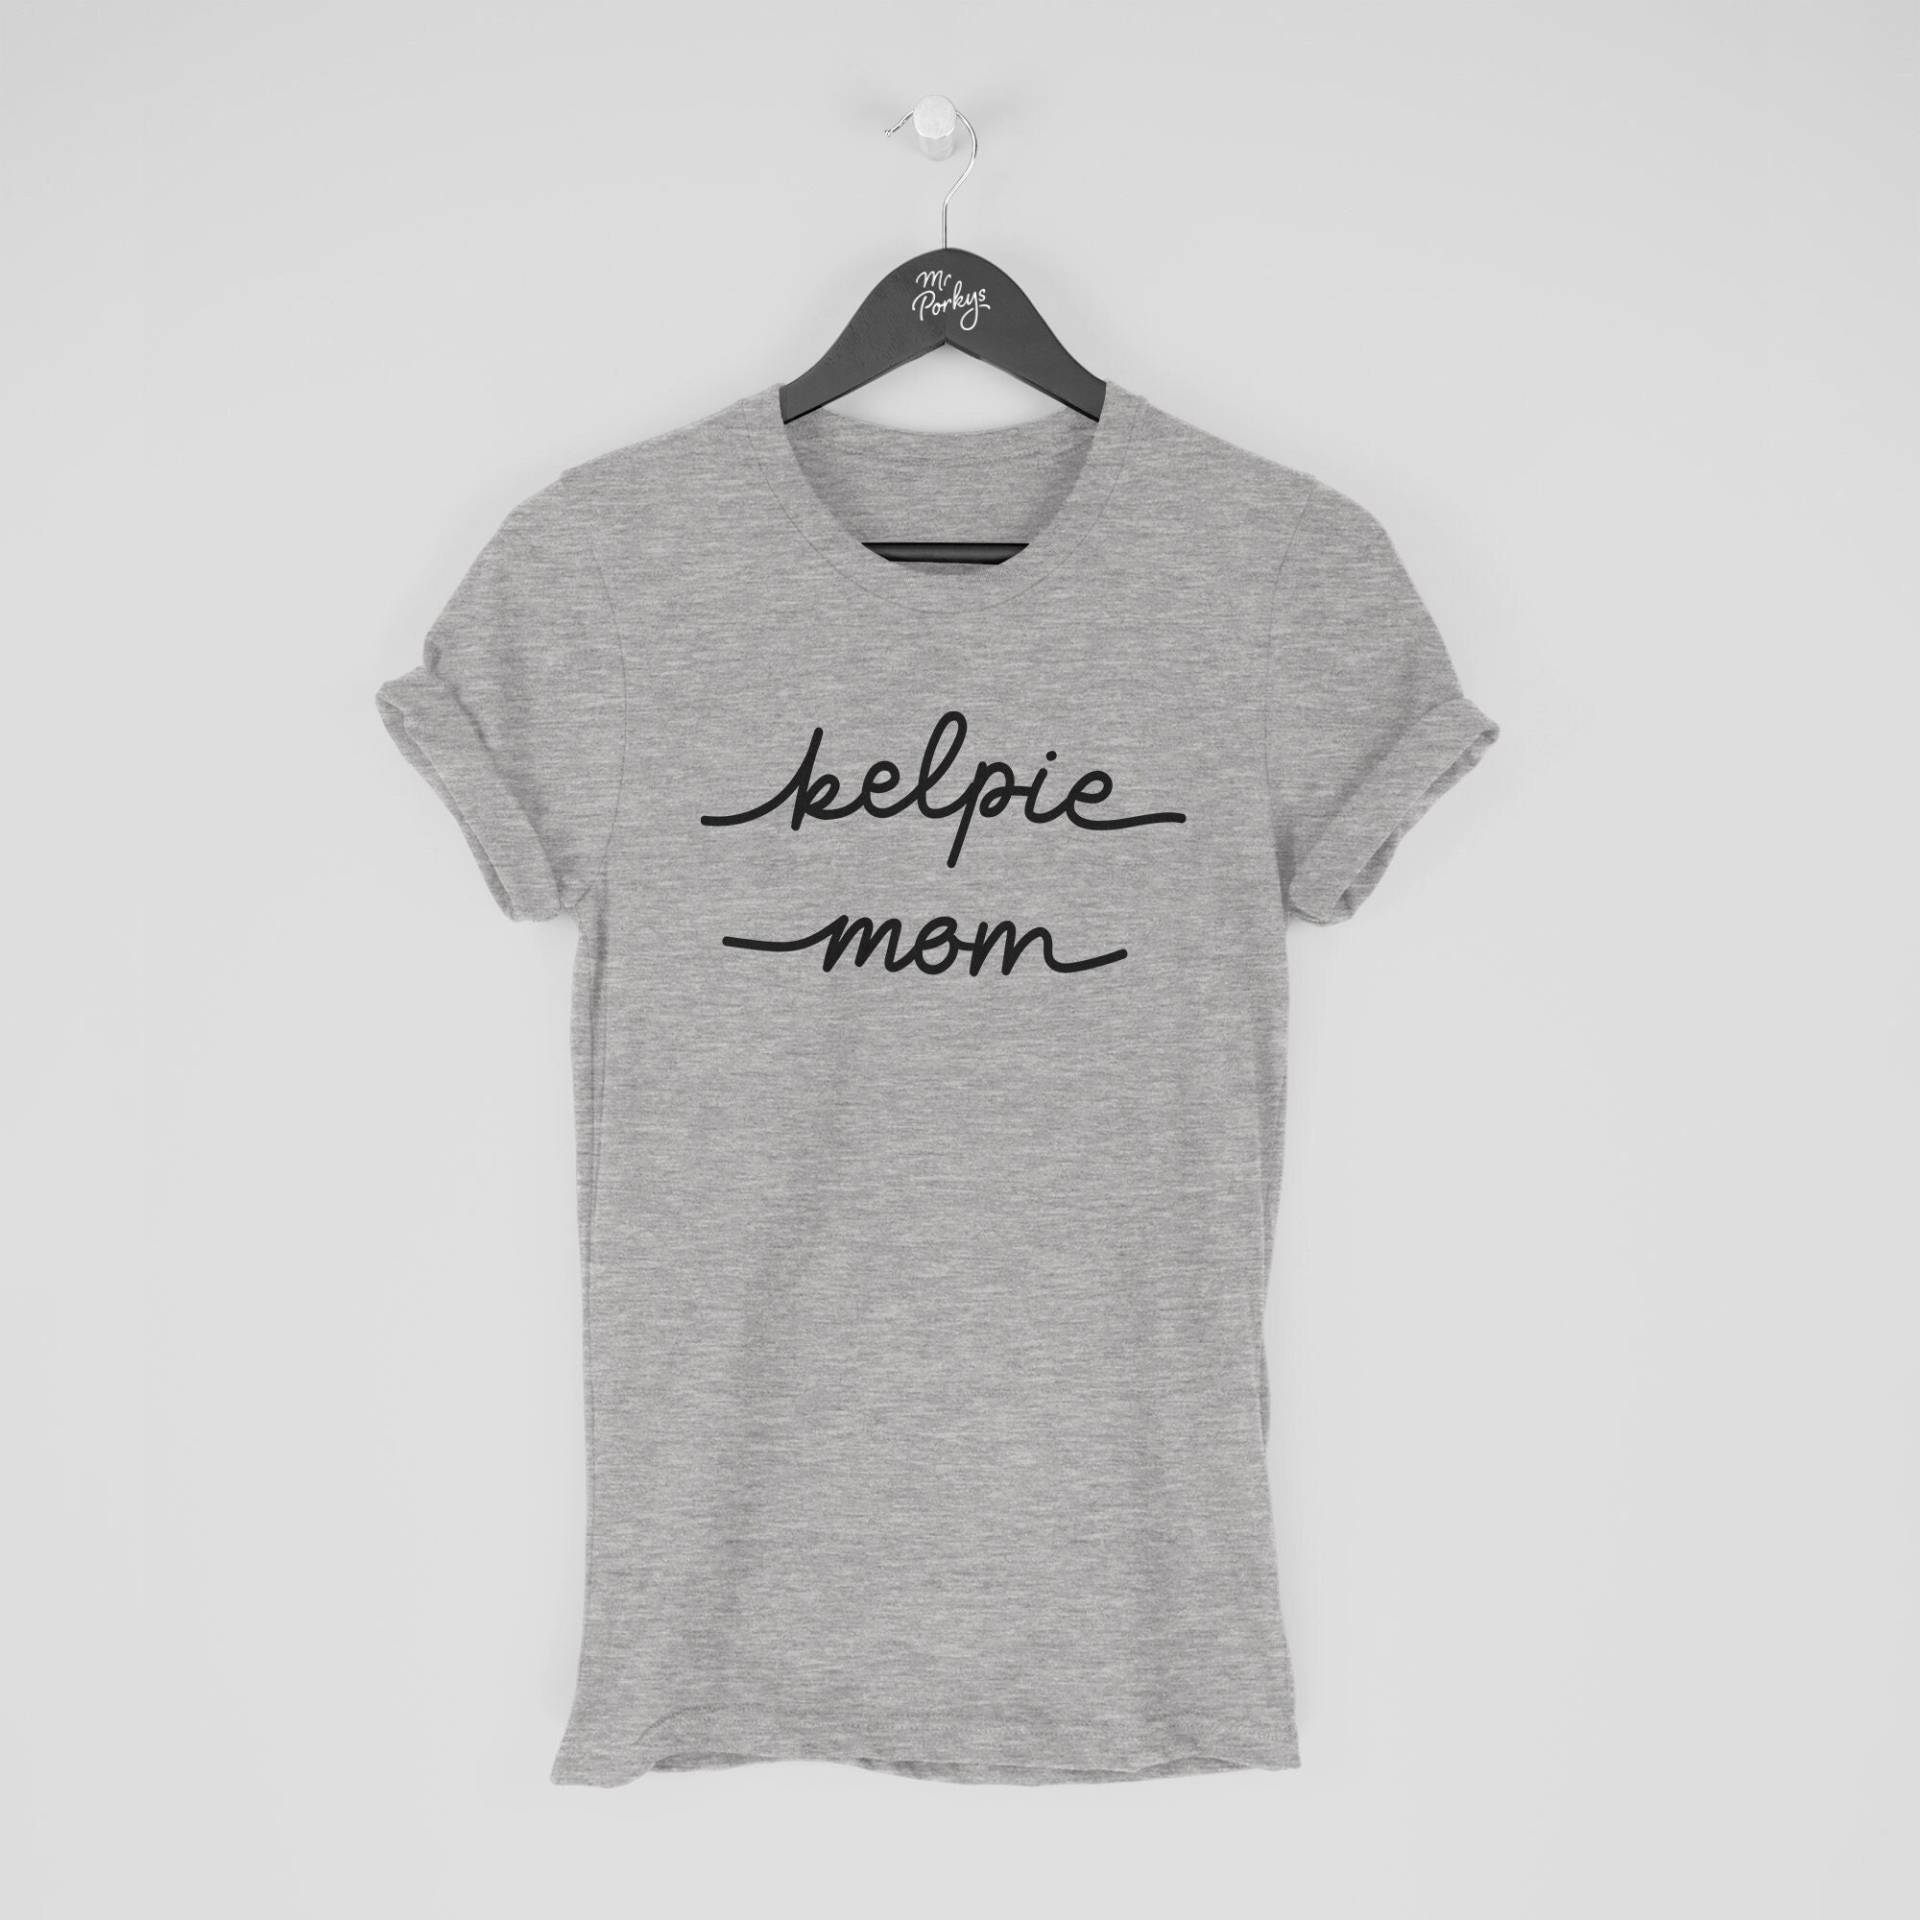 Kelpie T-Shirt, Mom Shirt, Geschenk Für Besitzer von MrPorkysGiftShop